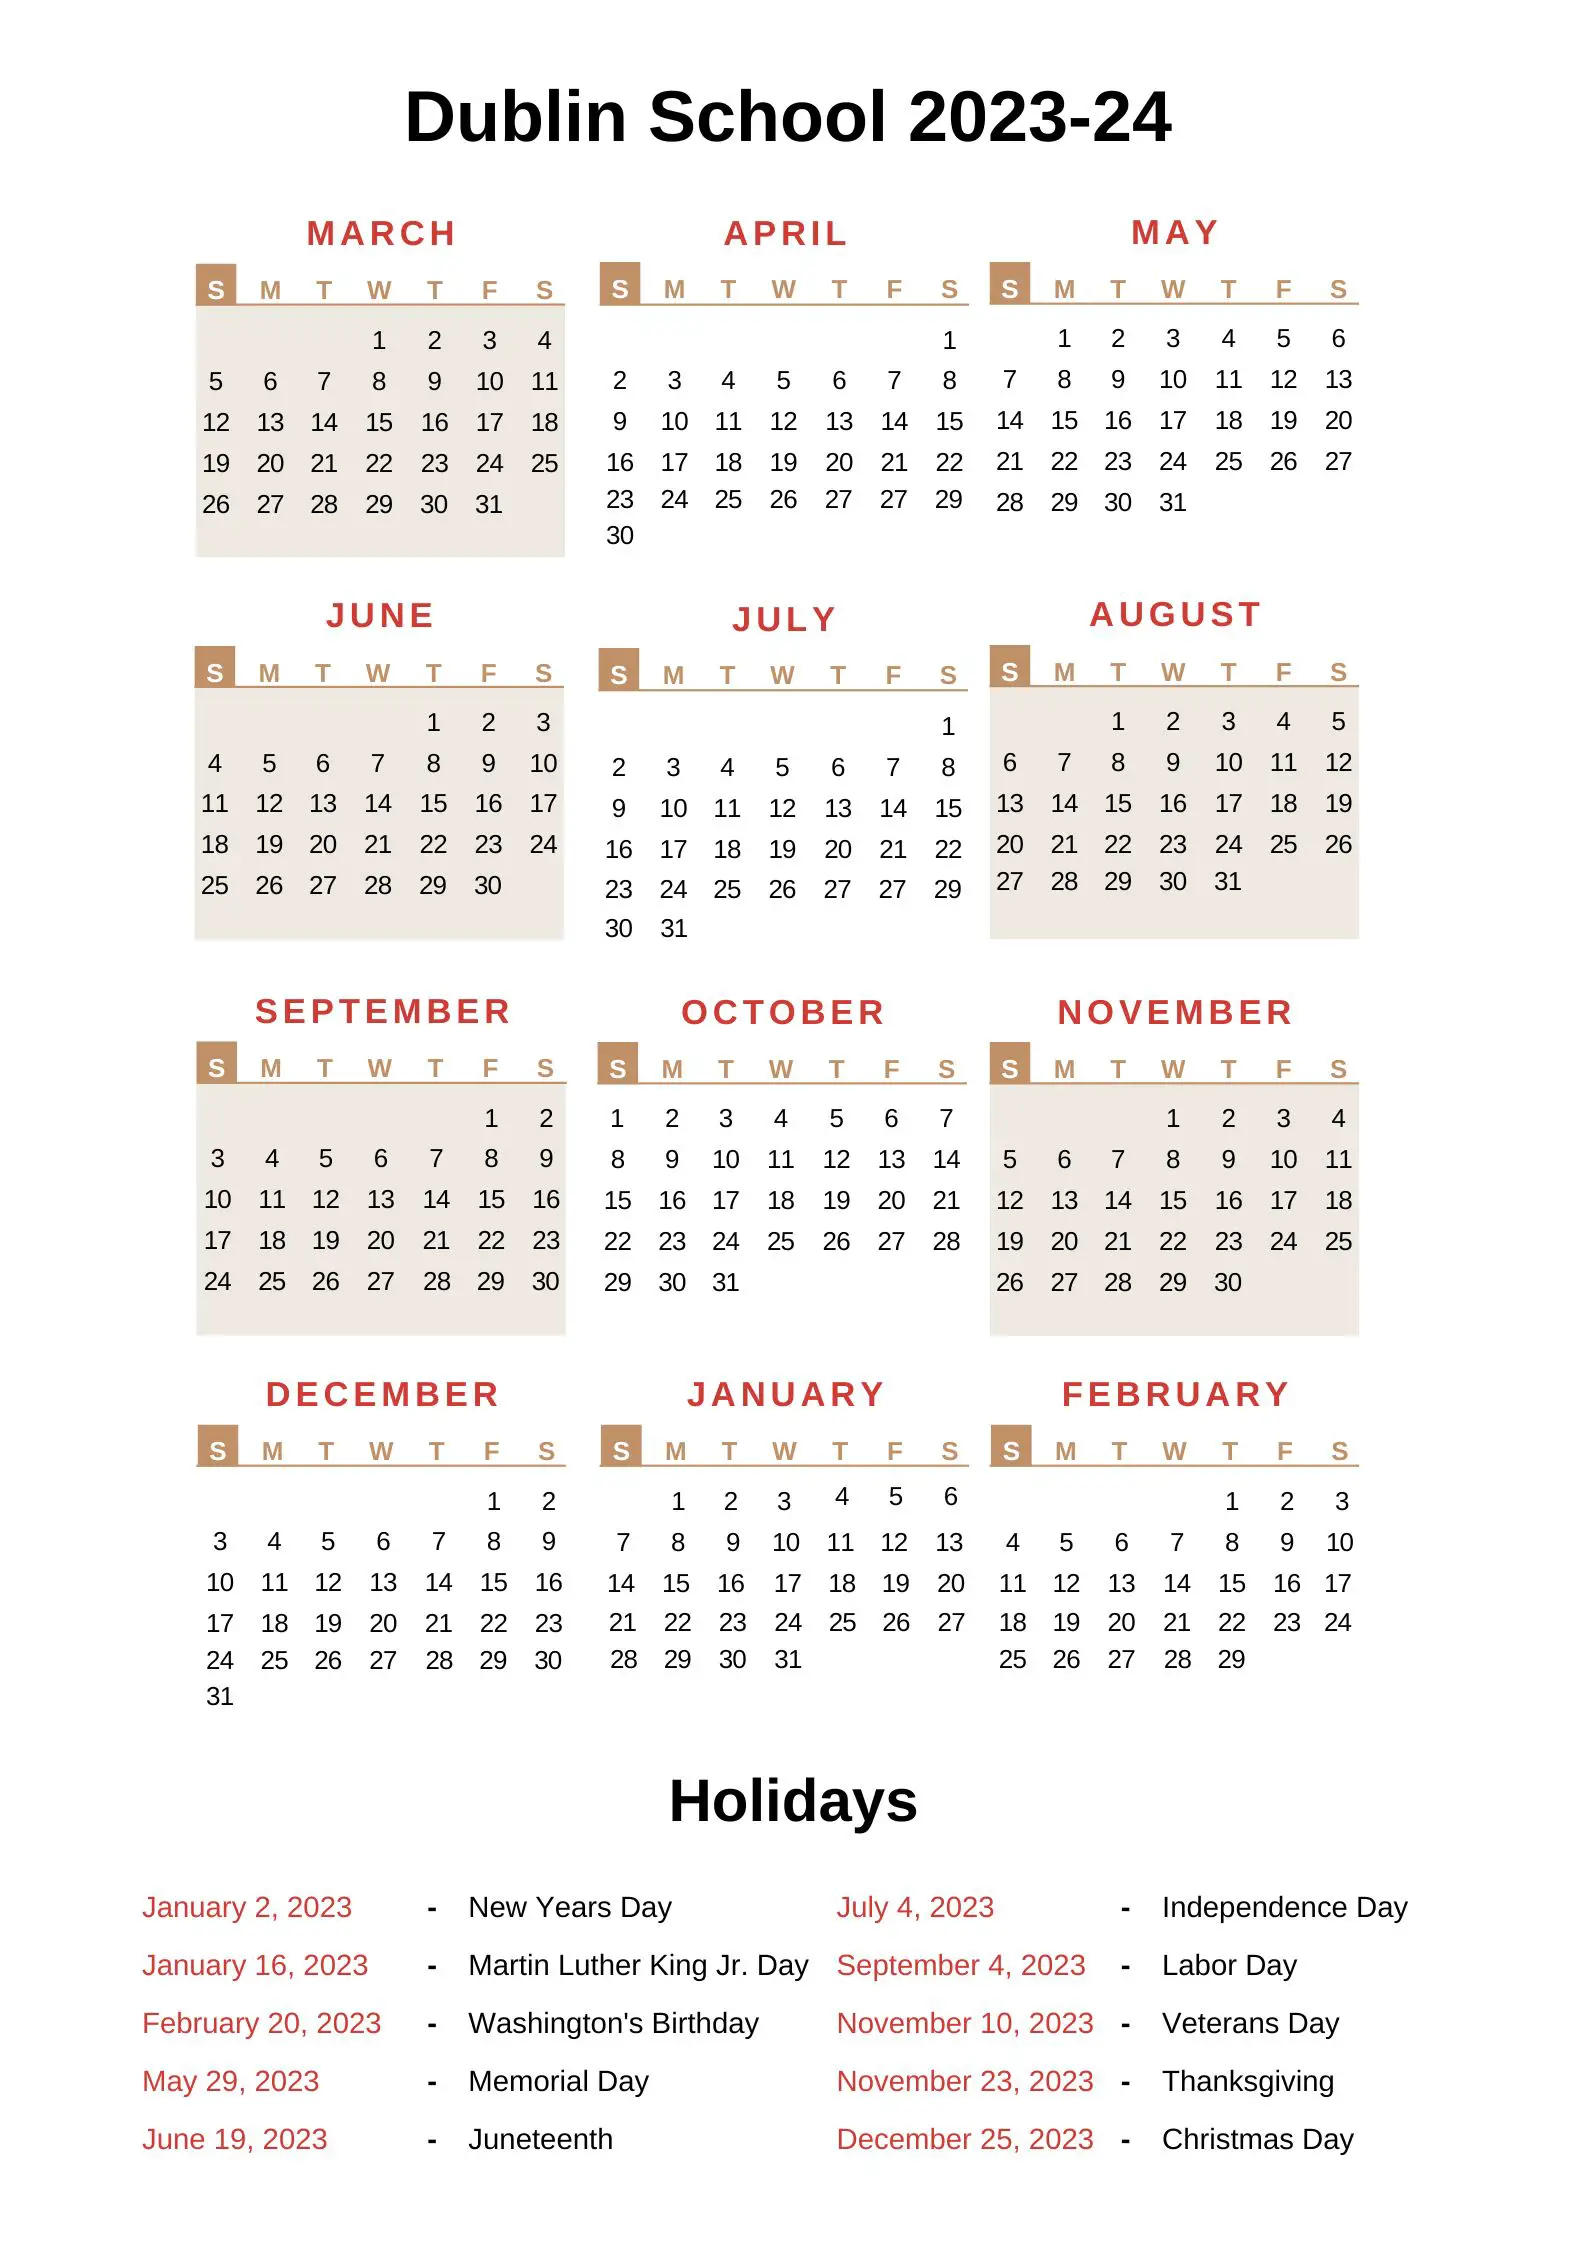 Dublin City Schools Calendar 2023 24 With Holidays